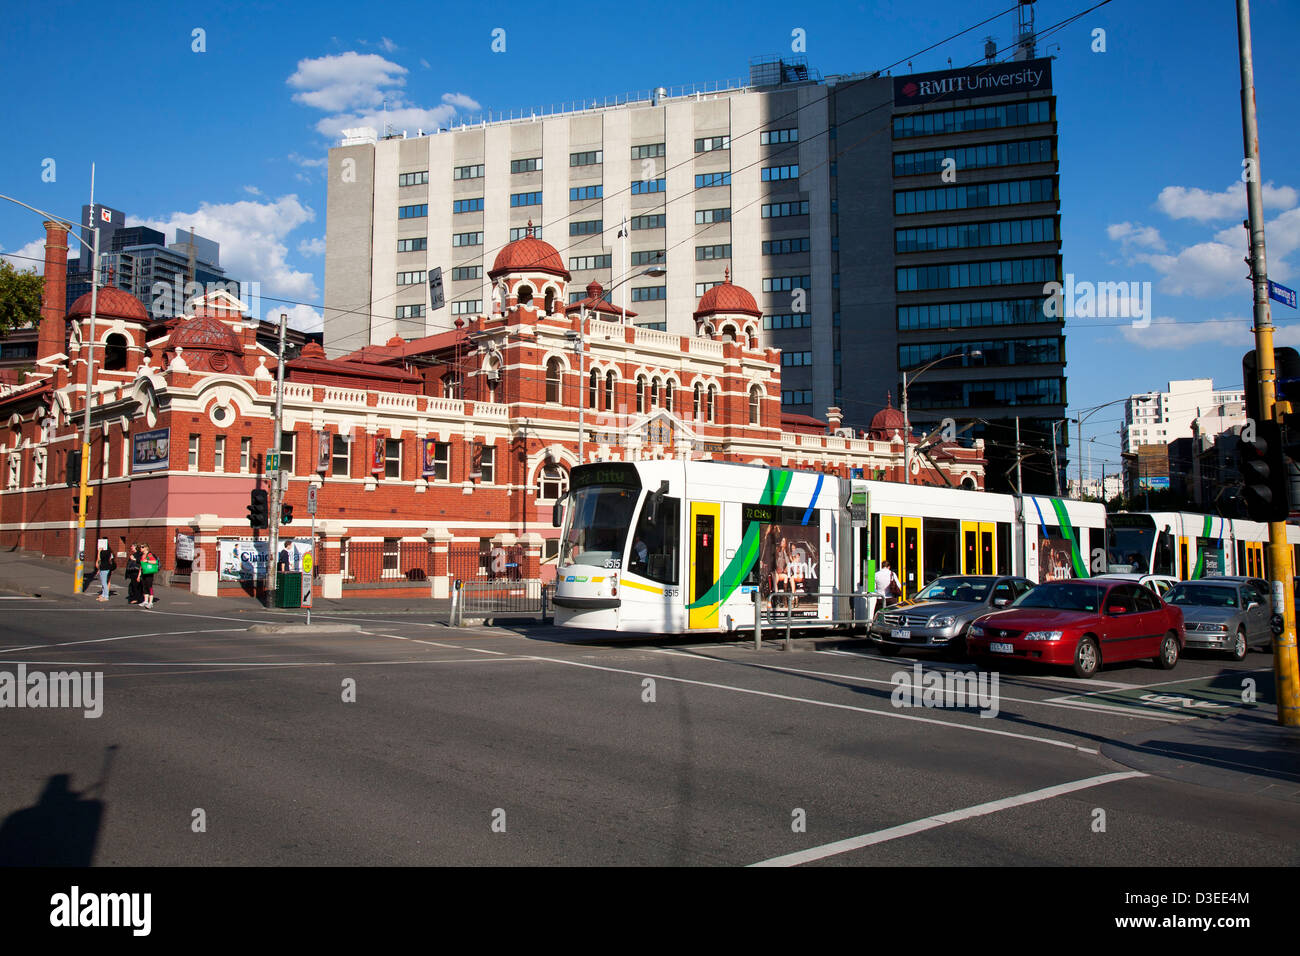 En dehors de l'arrêt de tramway Yarra Melbourne City Baths Swanston Street Melbourne Victoria Australia Banque D'Images